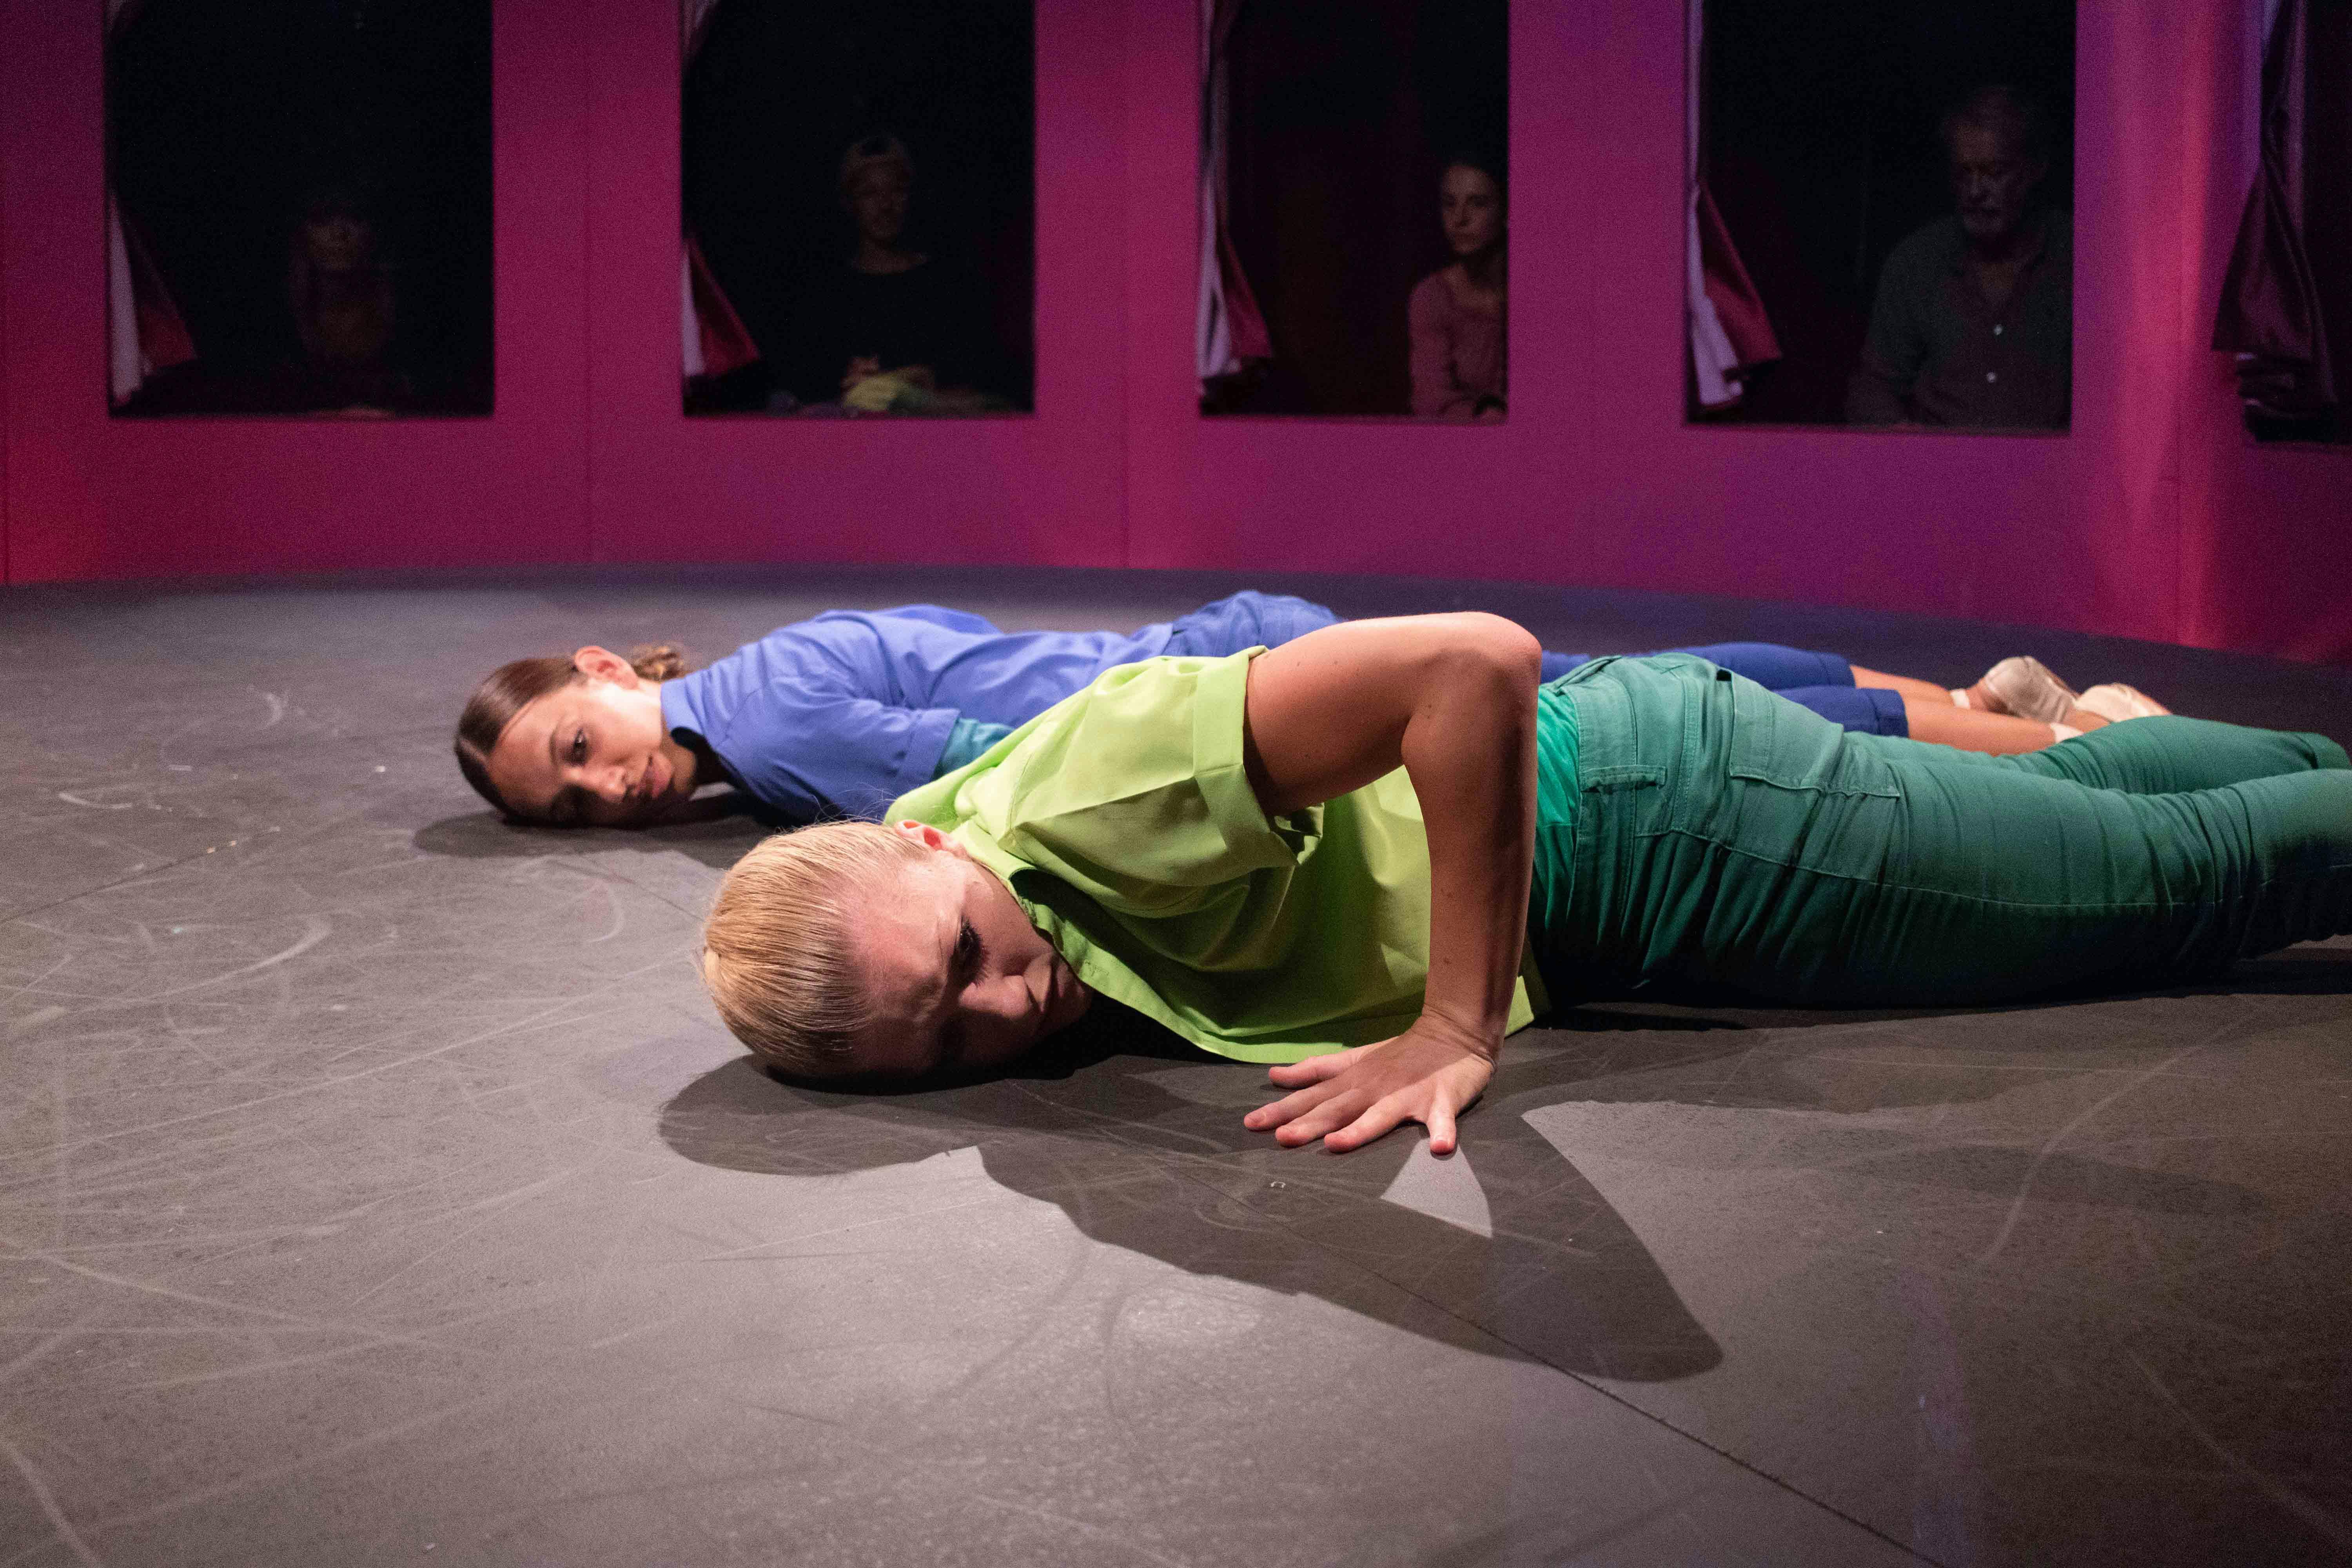 Due danzatrici sono sdraiate a terra prone, parallele tra loro. Una è vestita in blu, l'altra in verde. Dietro di loro, attraverso una serie di finestre, gli spettatori osservano.